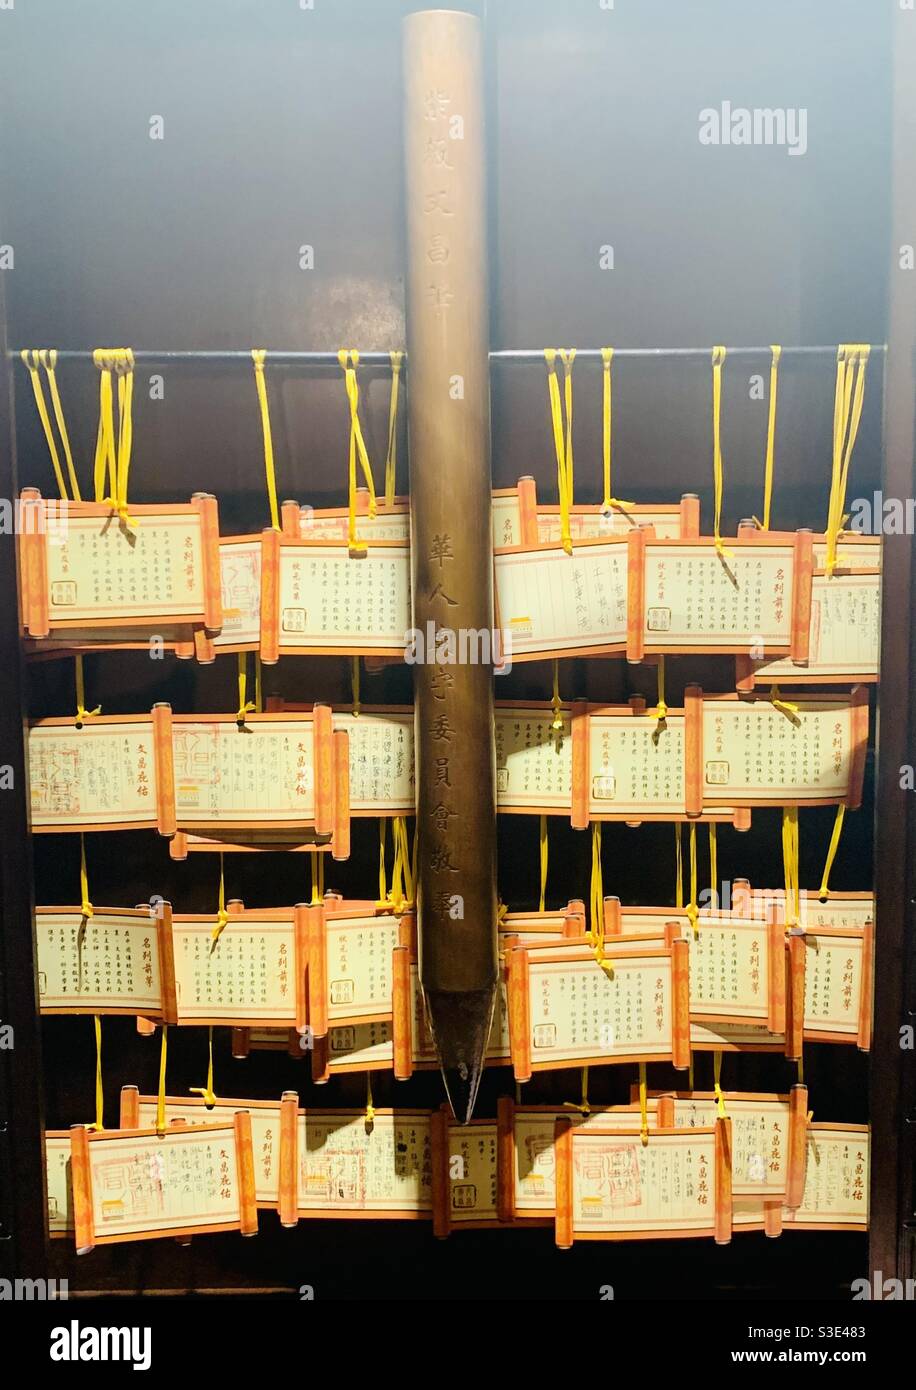 Wishing notes in the beautiful Hung Shing Taoist temple in Ap Lei Chau, Hong Kong. Stock Photo